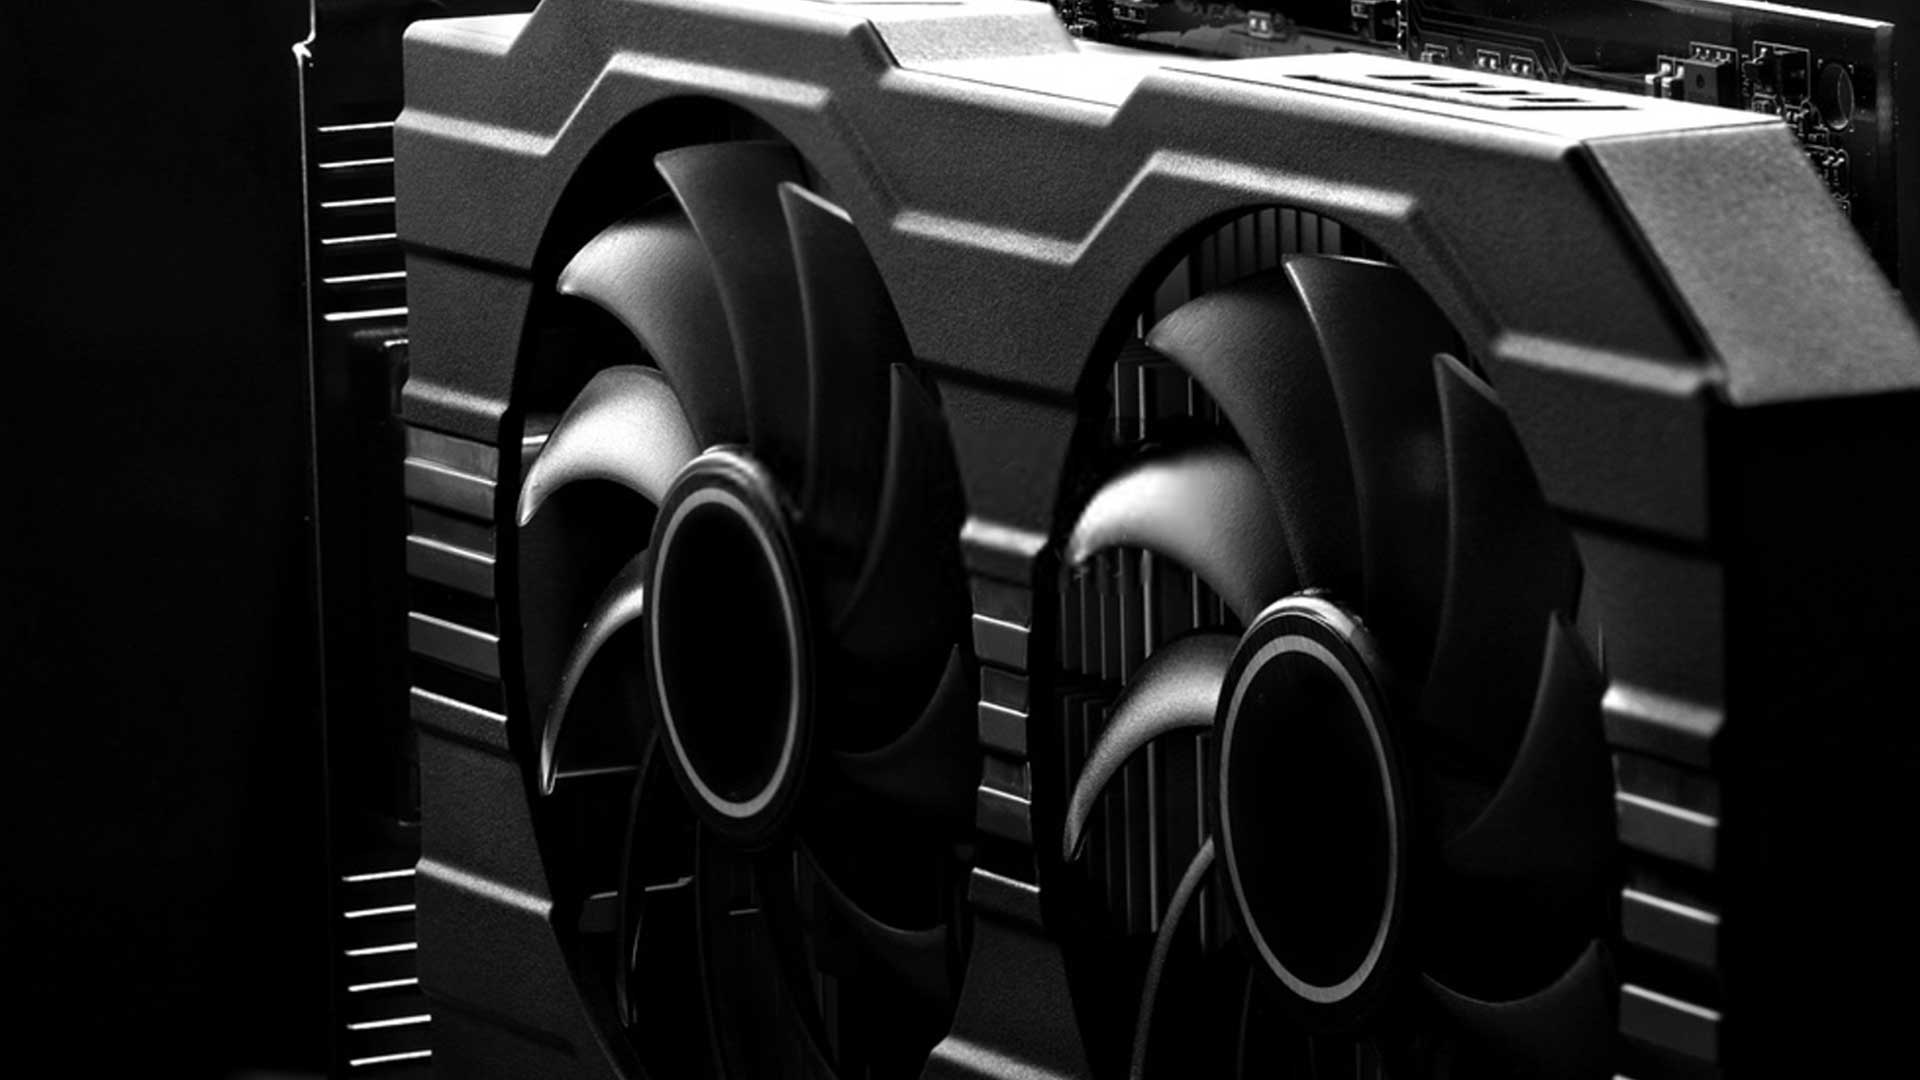 NVIDIA GeForce GT 710 foi a placa de vídeo mais vendida no Brasil em 2019,  indica relatório